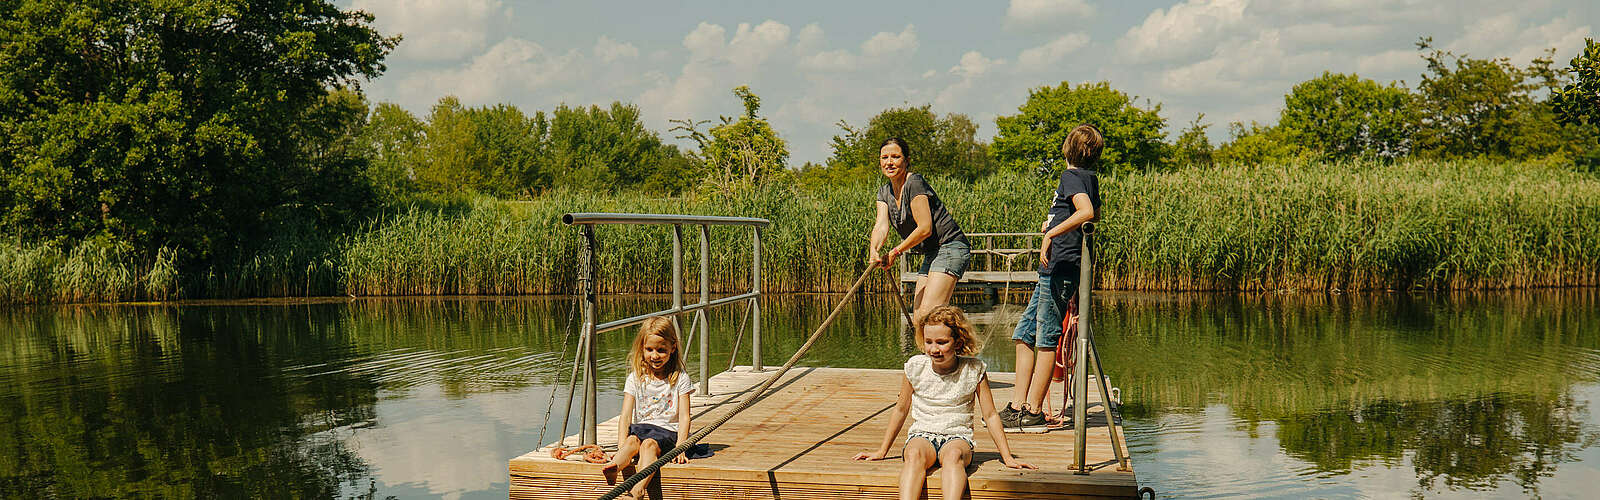 Familie im Erlebnis- und Ziegeleipark Mildenberg,
        
    

        Foto: TMB-Fotoarchiv/Julia Nimke